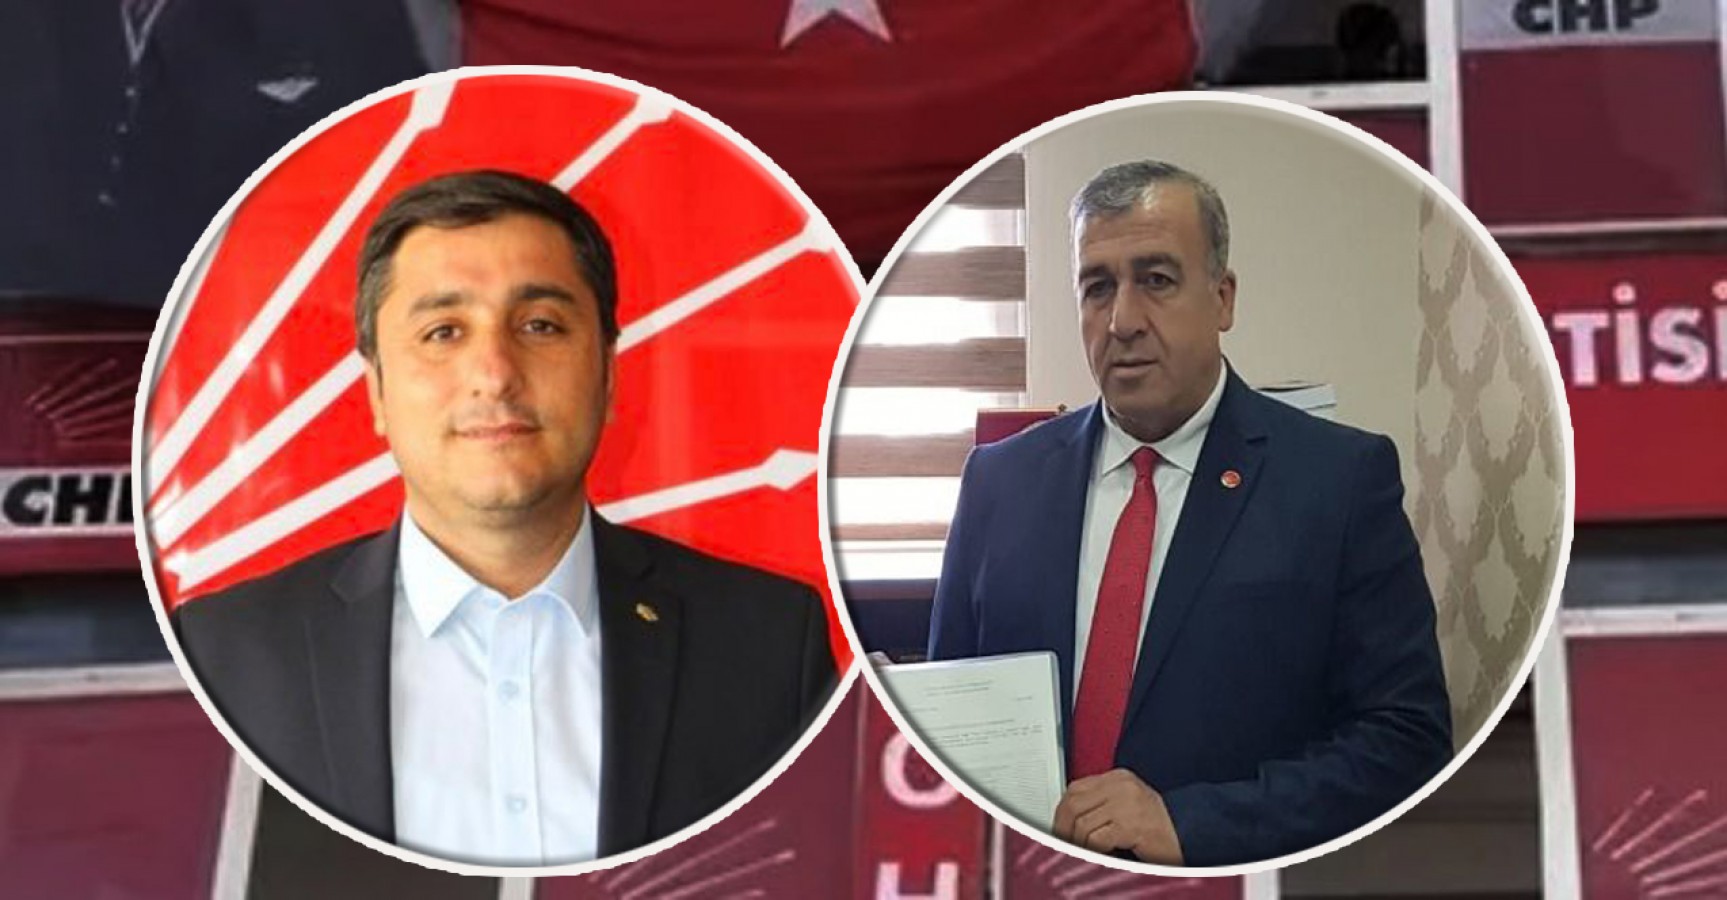 CHP Urfa İl Başkanı görevden alındı iddiası;